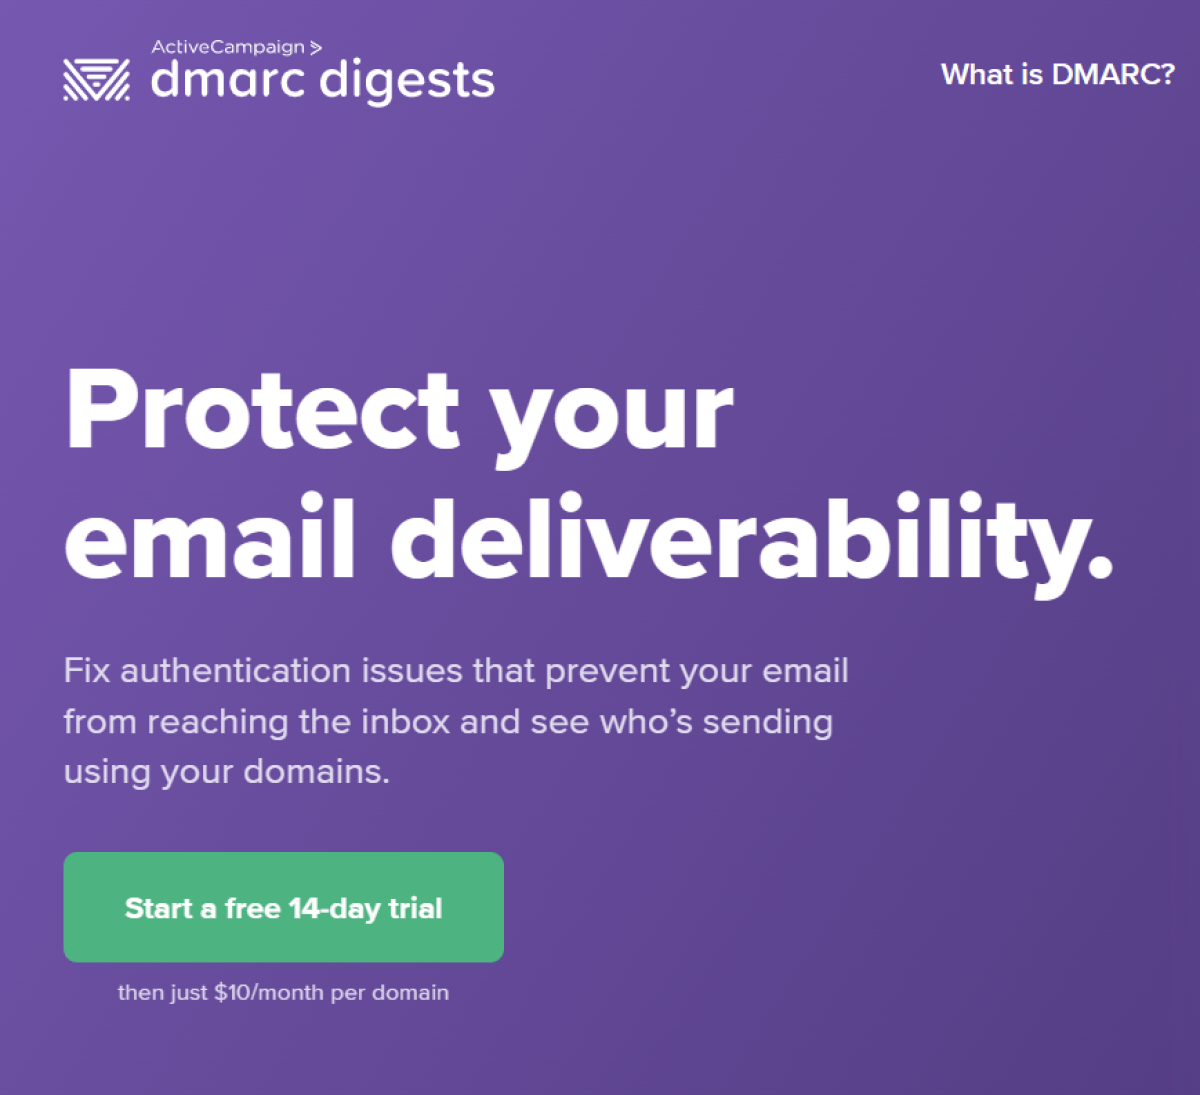 Web browser: DMARC Digests website